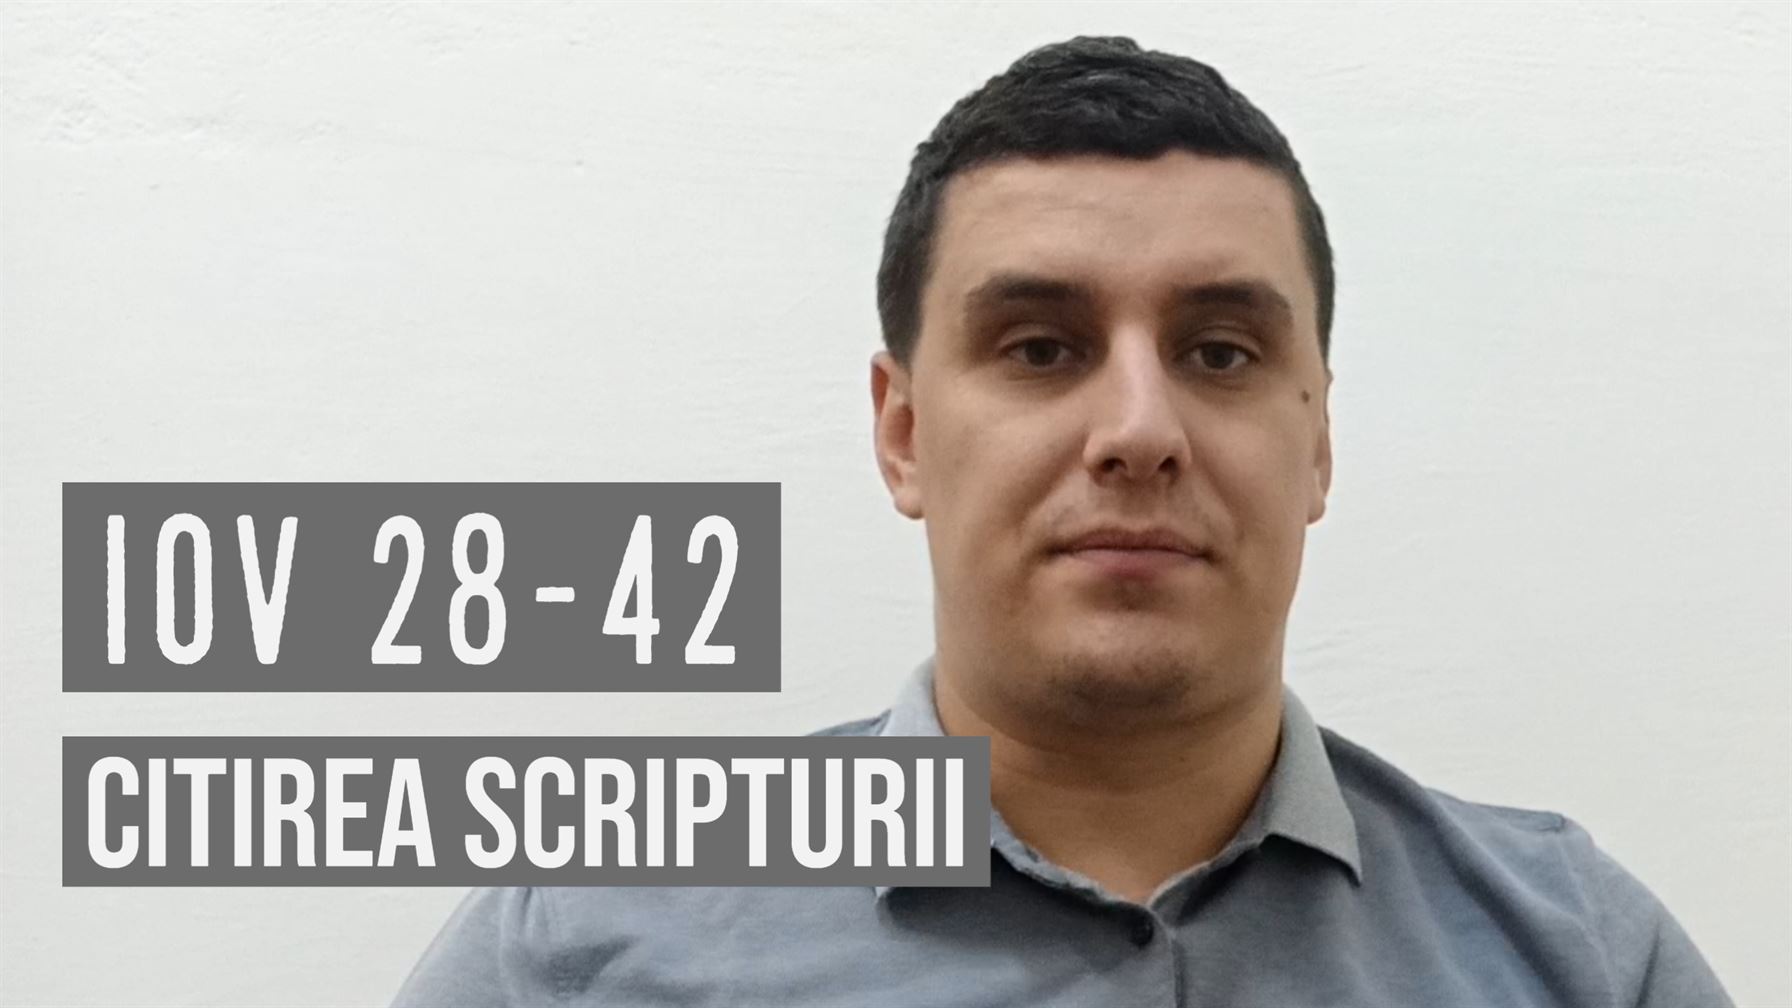 Citirea Scripturii - IOV 28-42 - Marius Danci